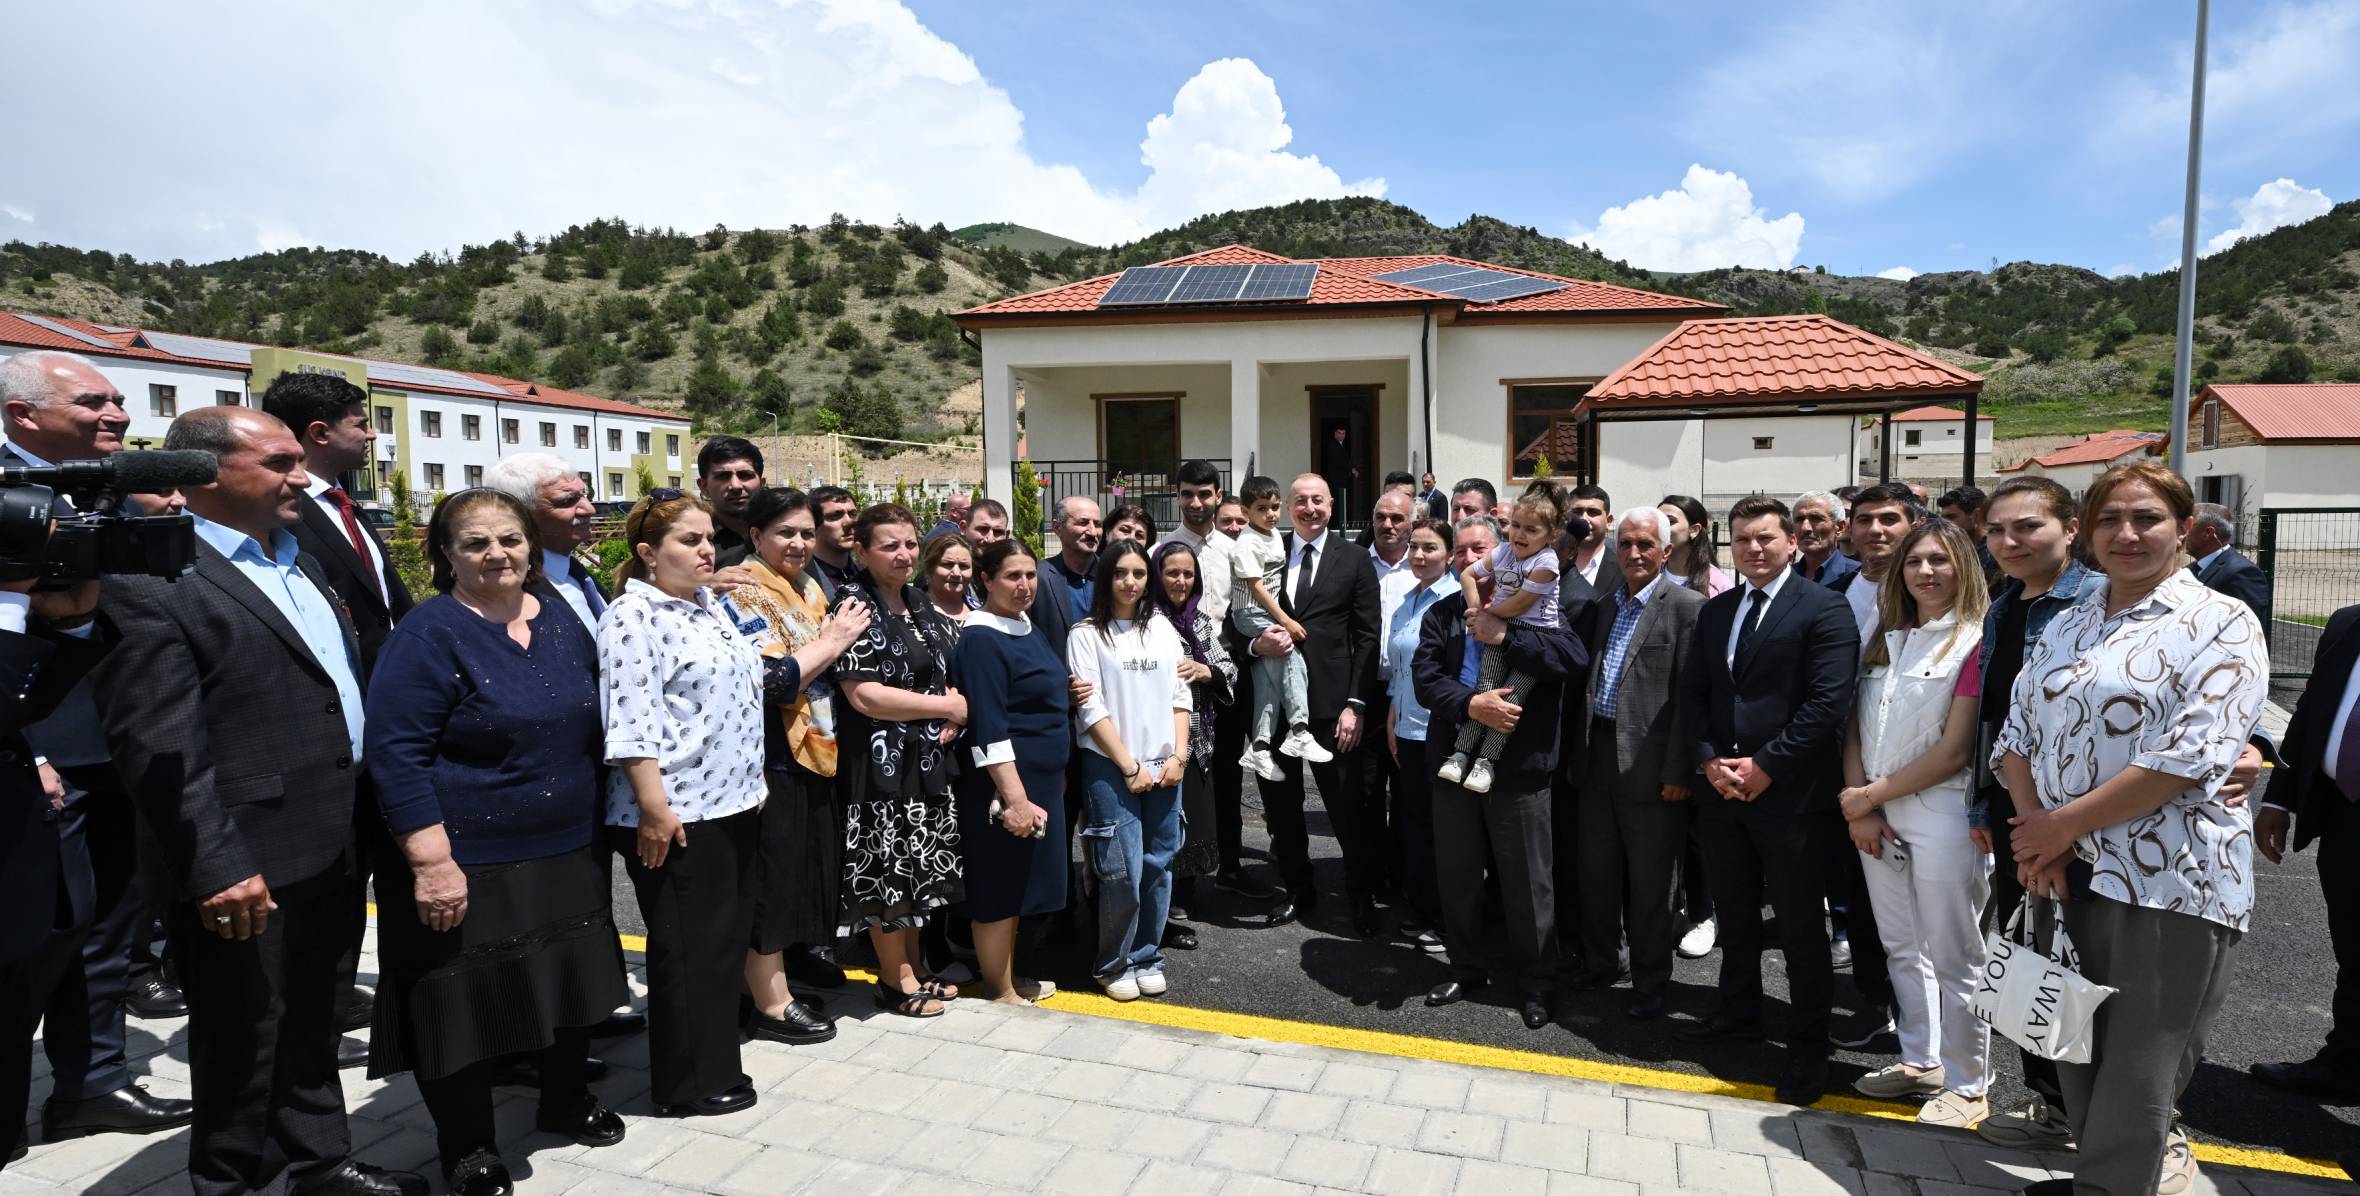 Ильхам Алиев встретился с жителями, переселившимися в село Сус Лачинского района, принял участие в открытии малых гидроэлектростанций